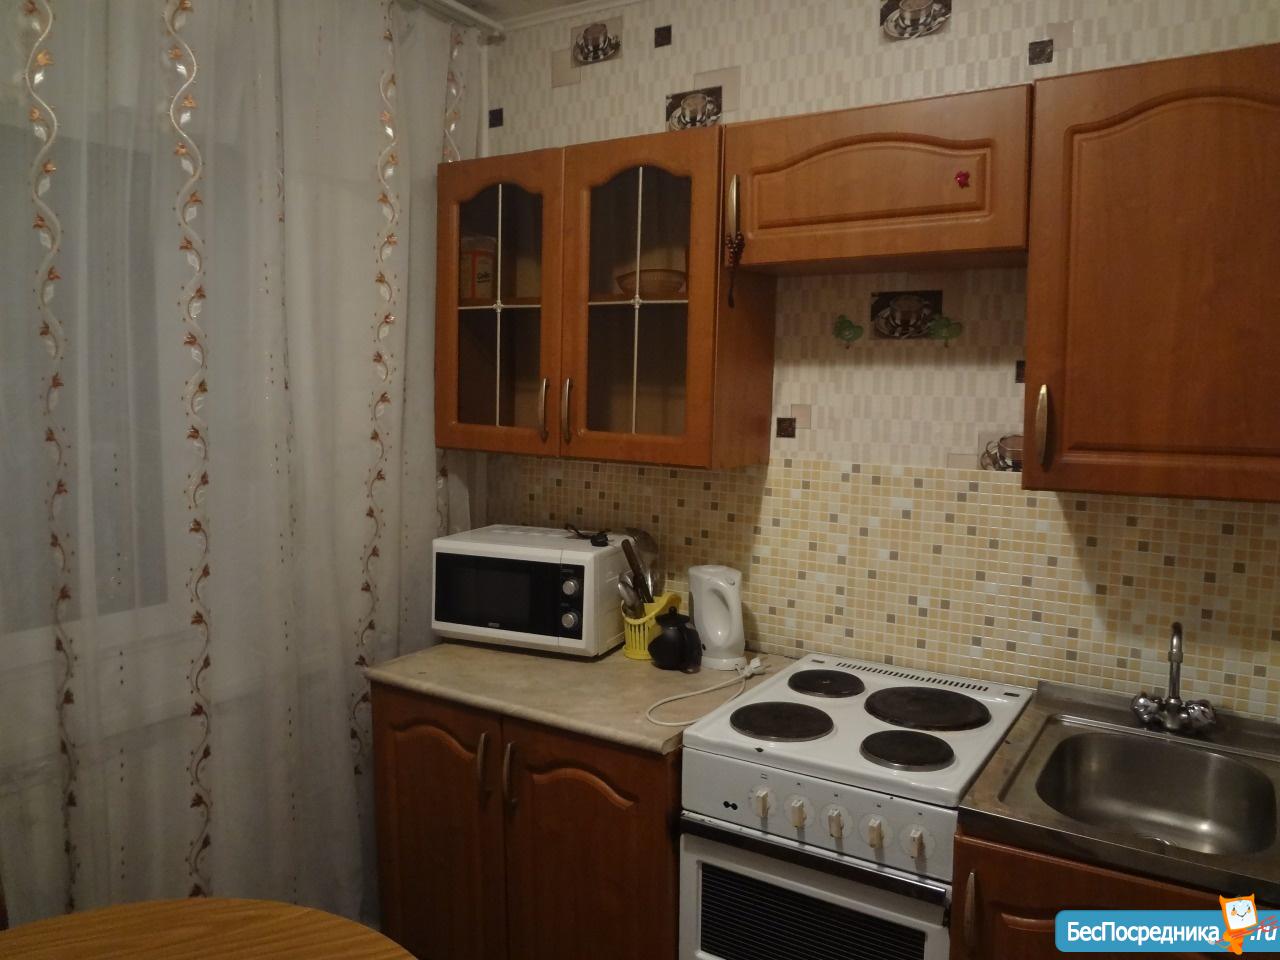 Снять квартиру в аренду в Новокузнецке район Кузнецкий 2 комнатную